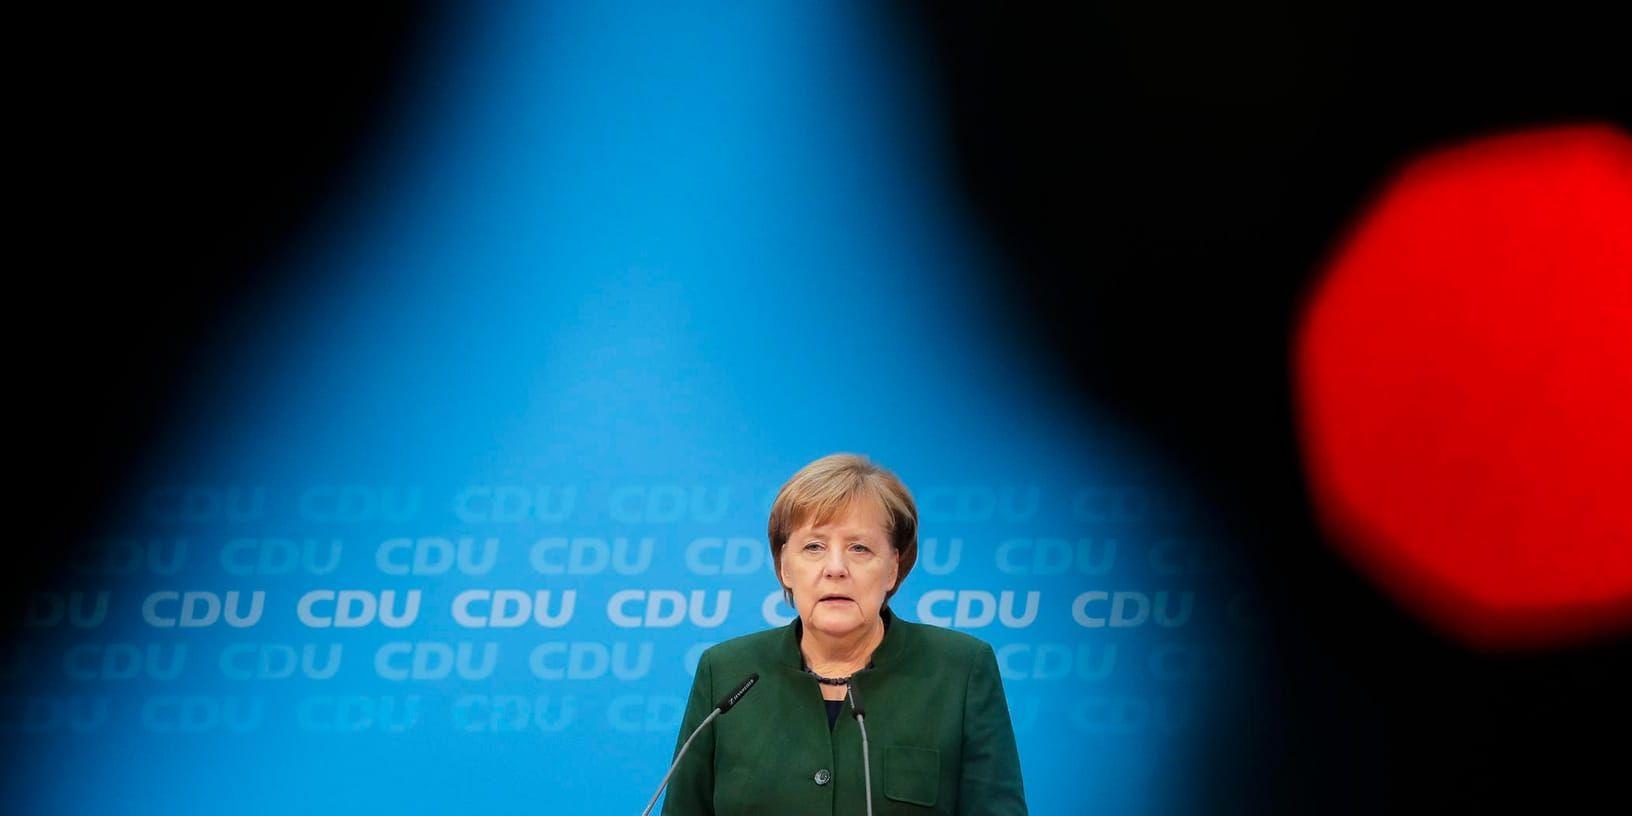 Tysklands förbundskansler Angela Merkel på en pressträff efter ett möte med andra ledare inom sitt kristdemokratiska parti, CDU.